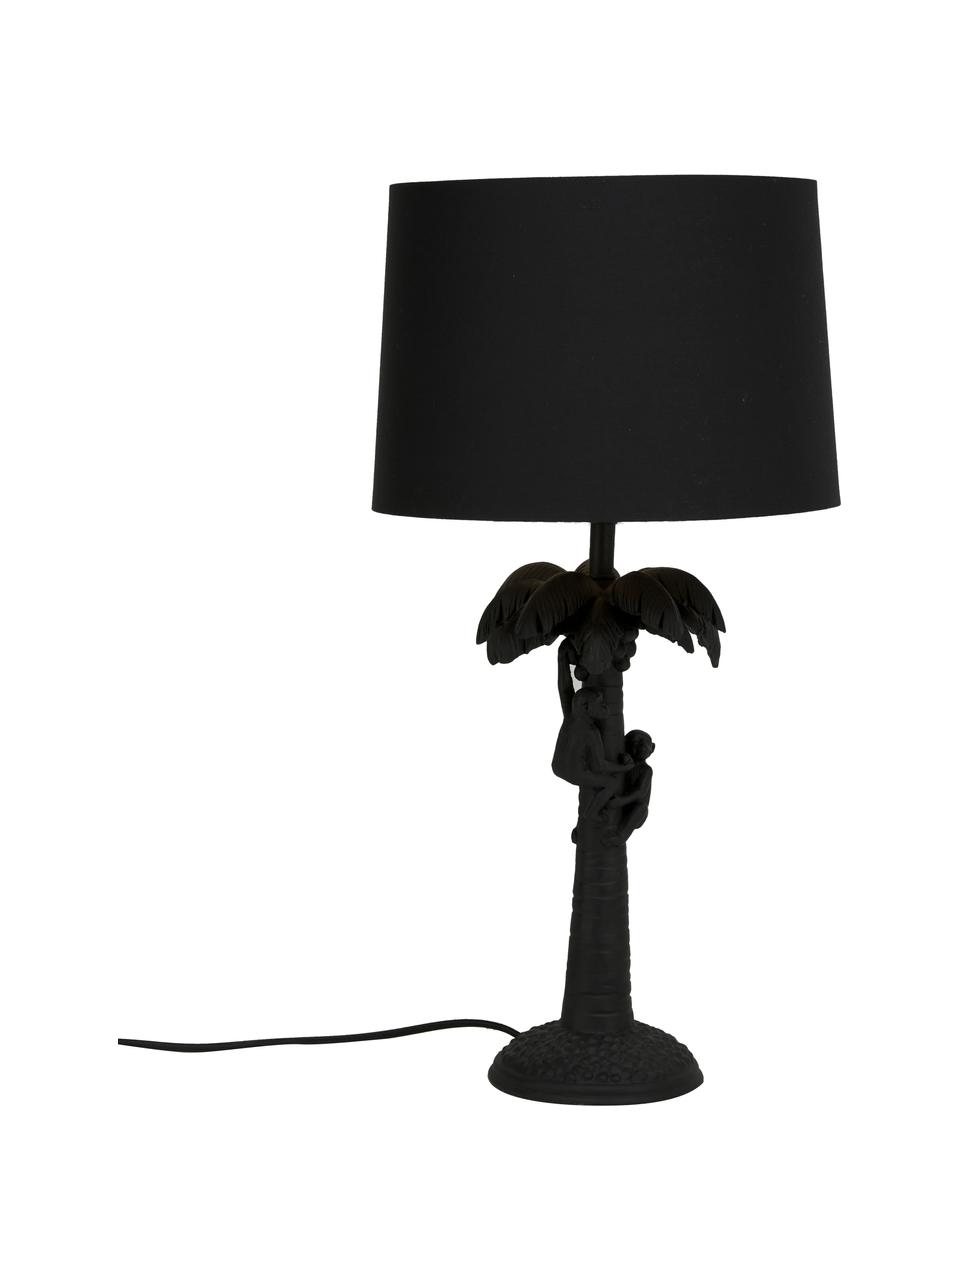 Große Tischlampe Coconut, Lampenschirm: Baumwolle, Lampenfuß: Kunststoff, Schwarz, Ø 31 x H 58 cm